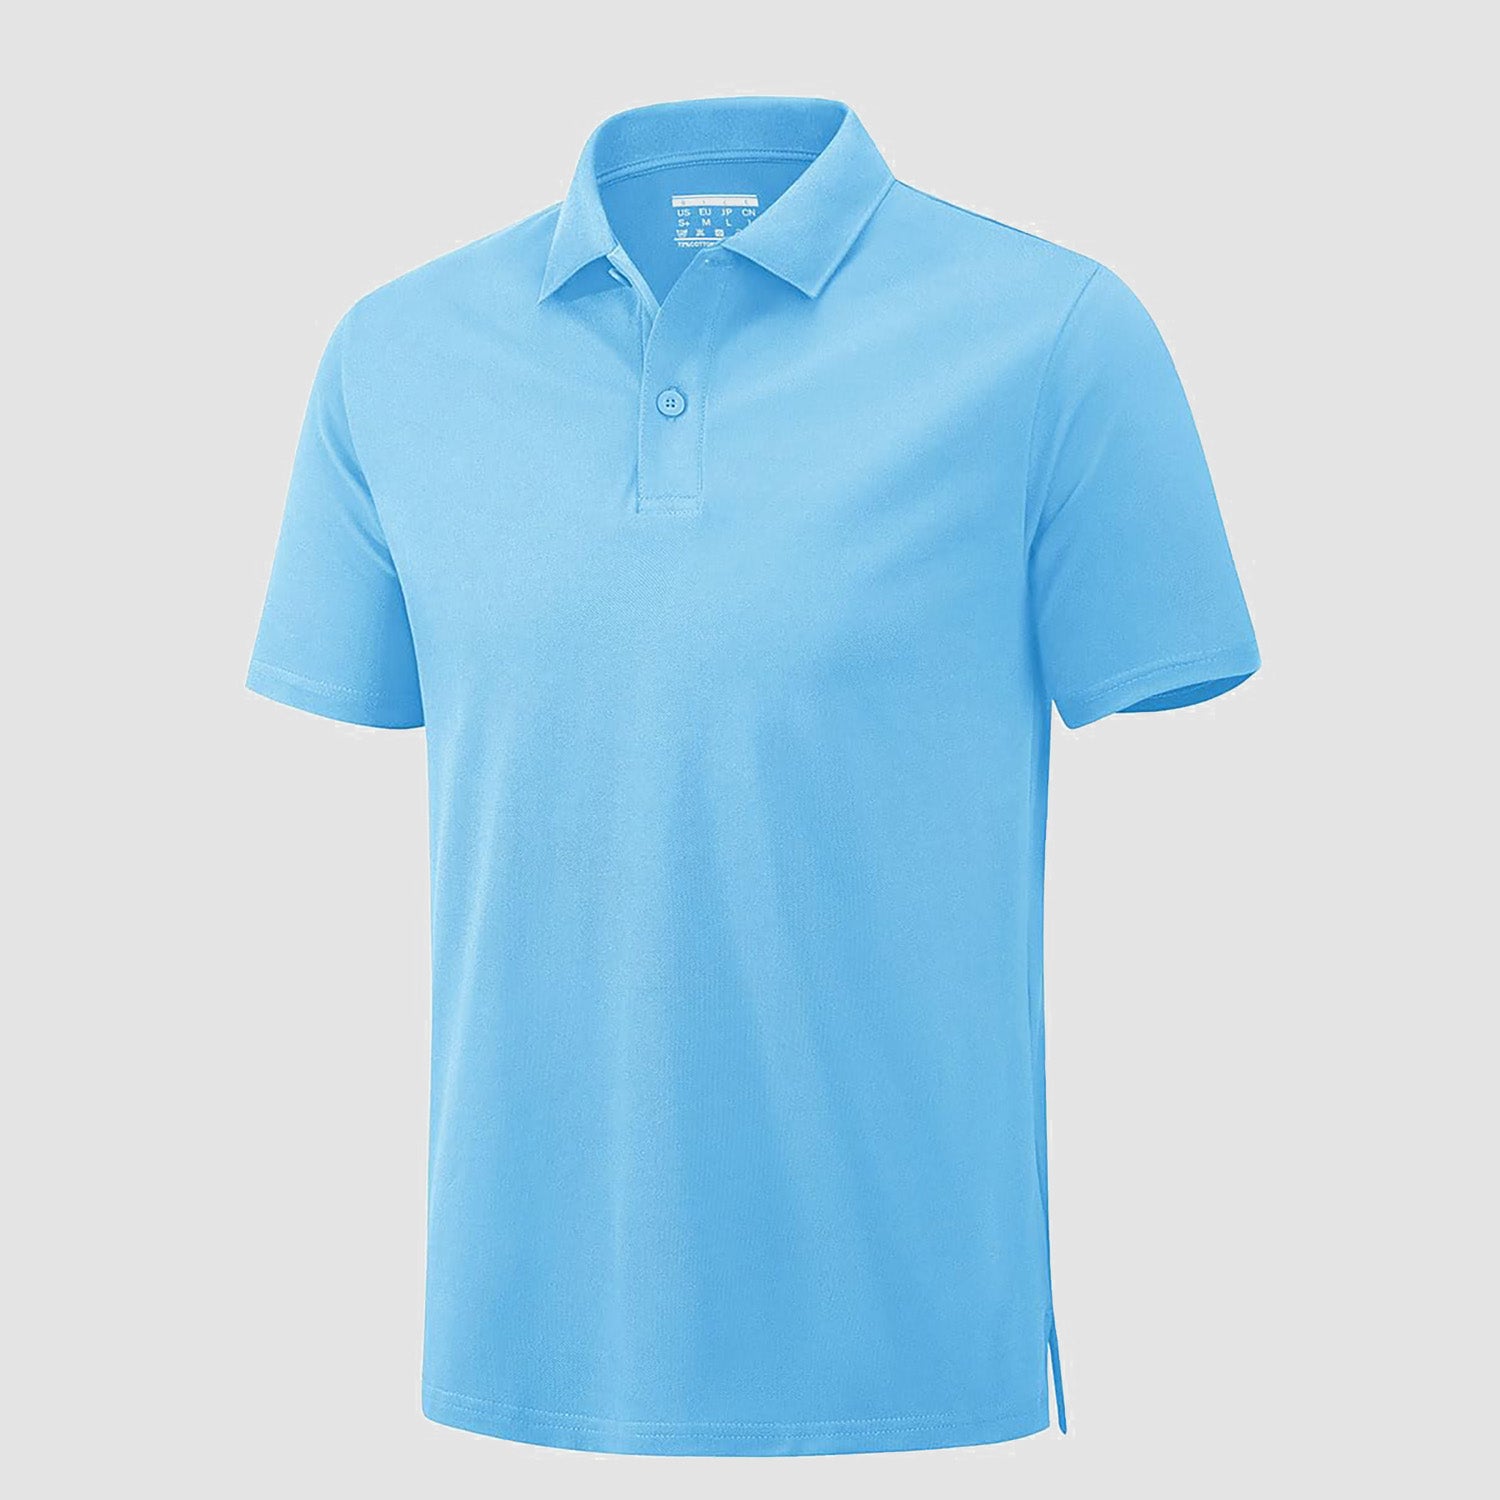 Mens Polo Shirt Golf Shirt Cotton Short Sleeve Casual T-Shirt Lightweight Summer Tennis Polo